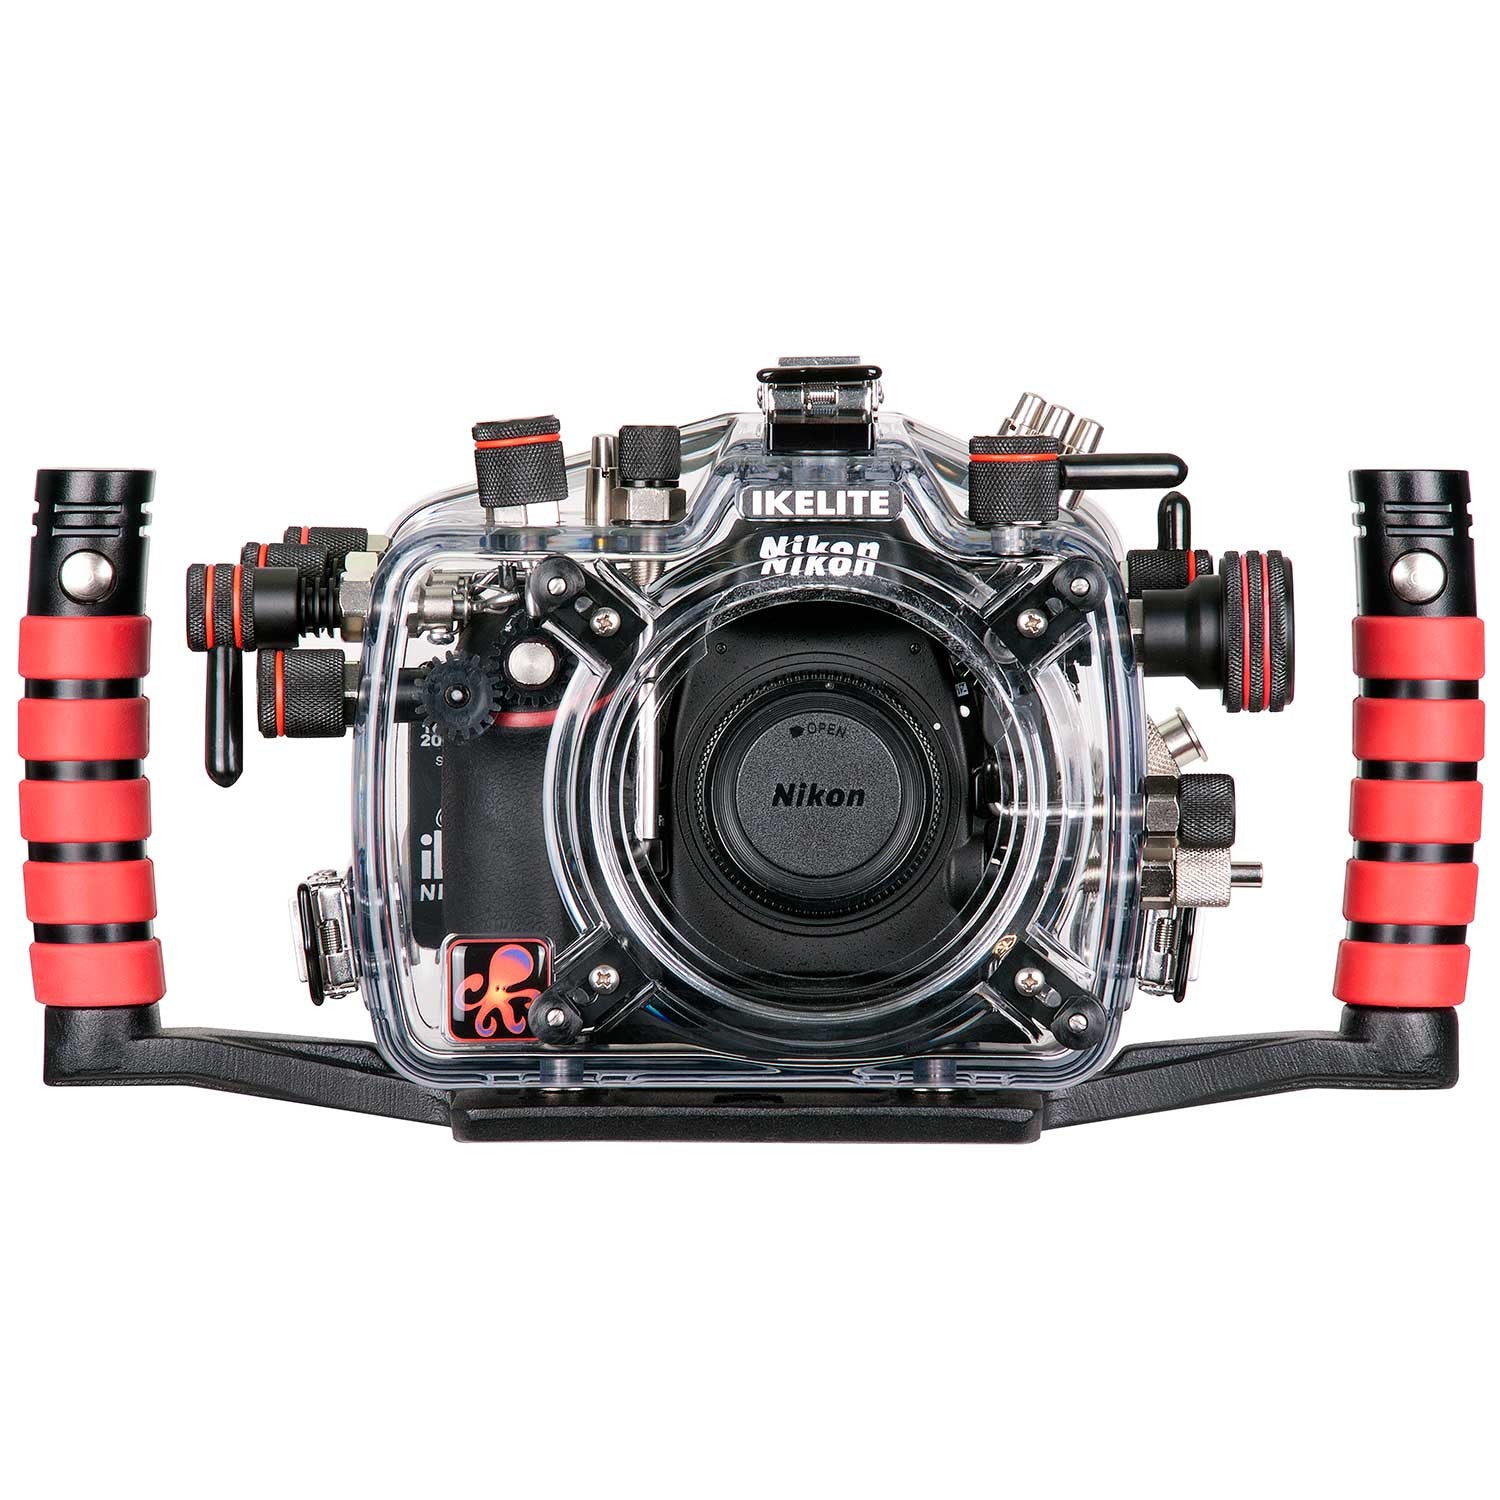 200FL Underwater TTL Housing for Nikon D800 D800E DSLR Cameras